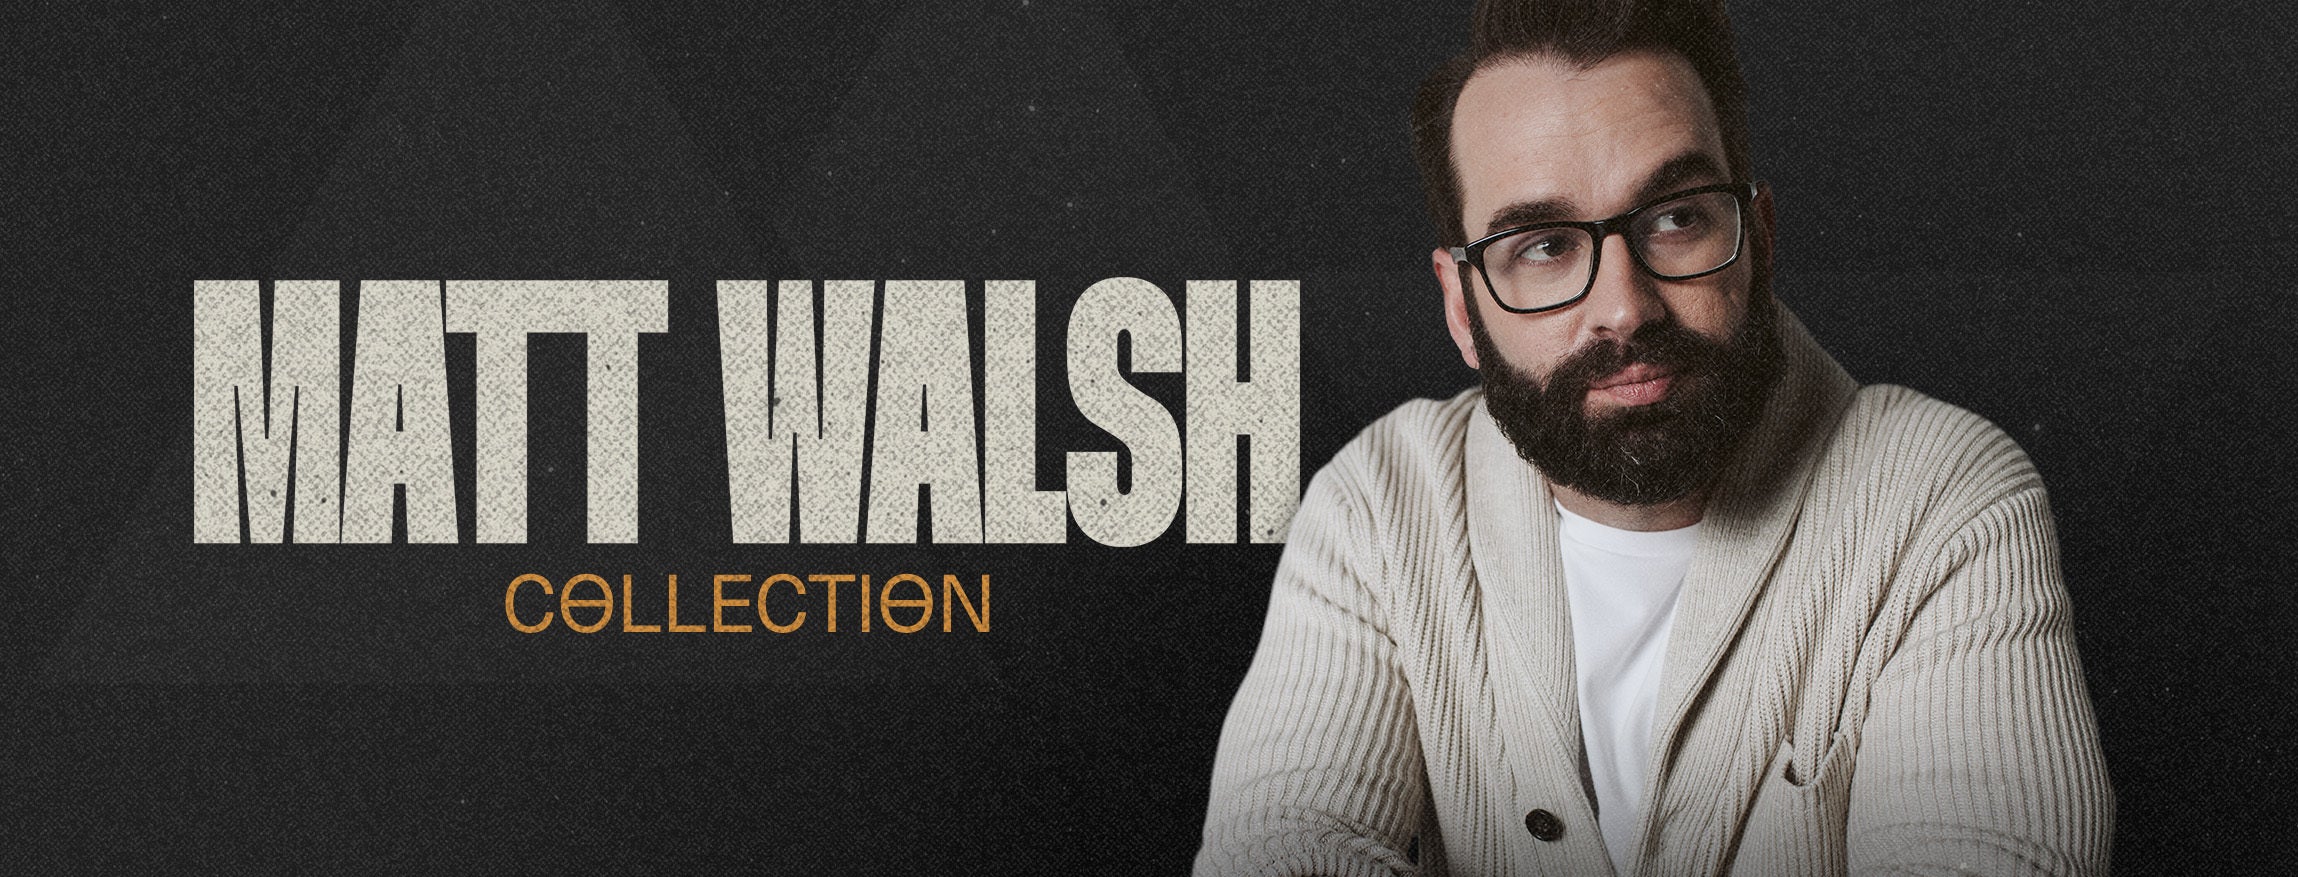 Matt Walsh Collection